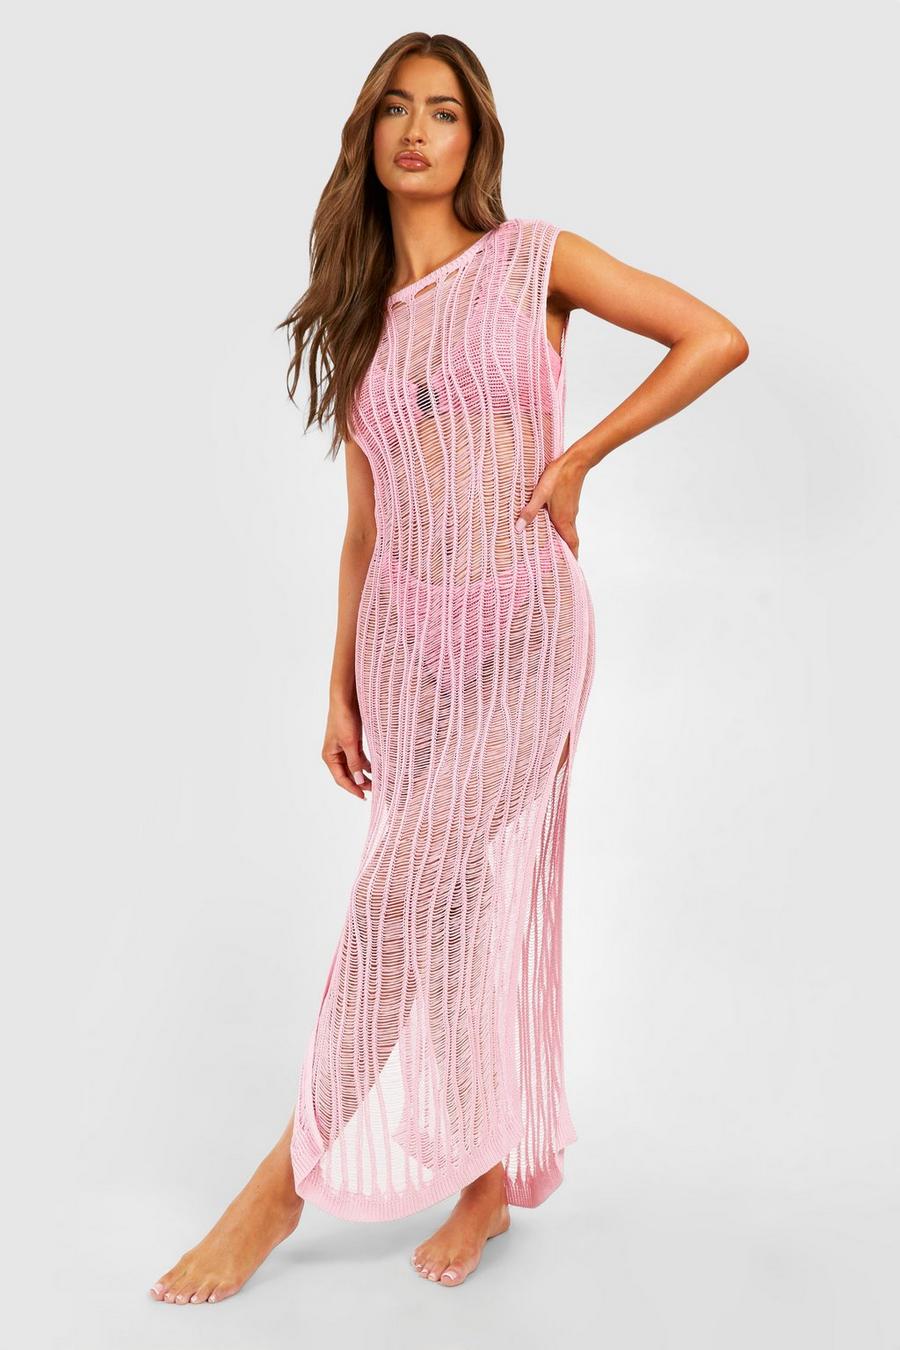 Baby pink Ladder Crochet Cover-up Beach Maxi Dress